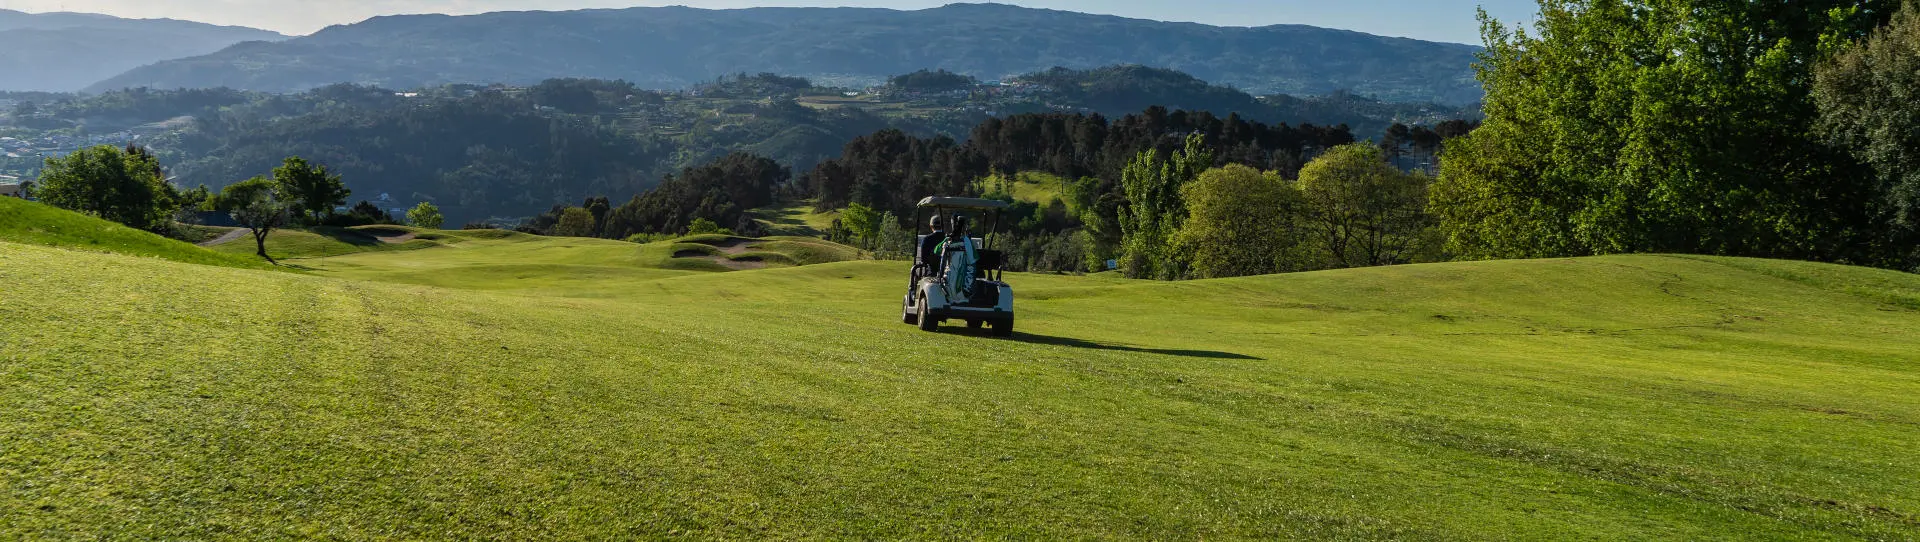 Portugal golf courses - Amarante - Photo 3